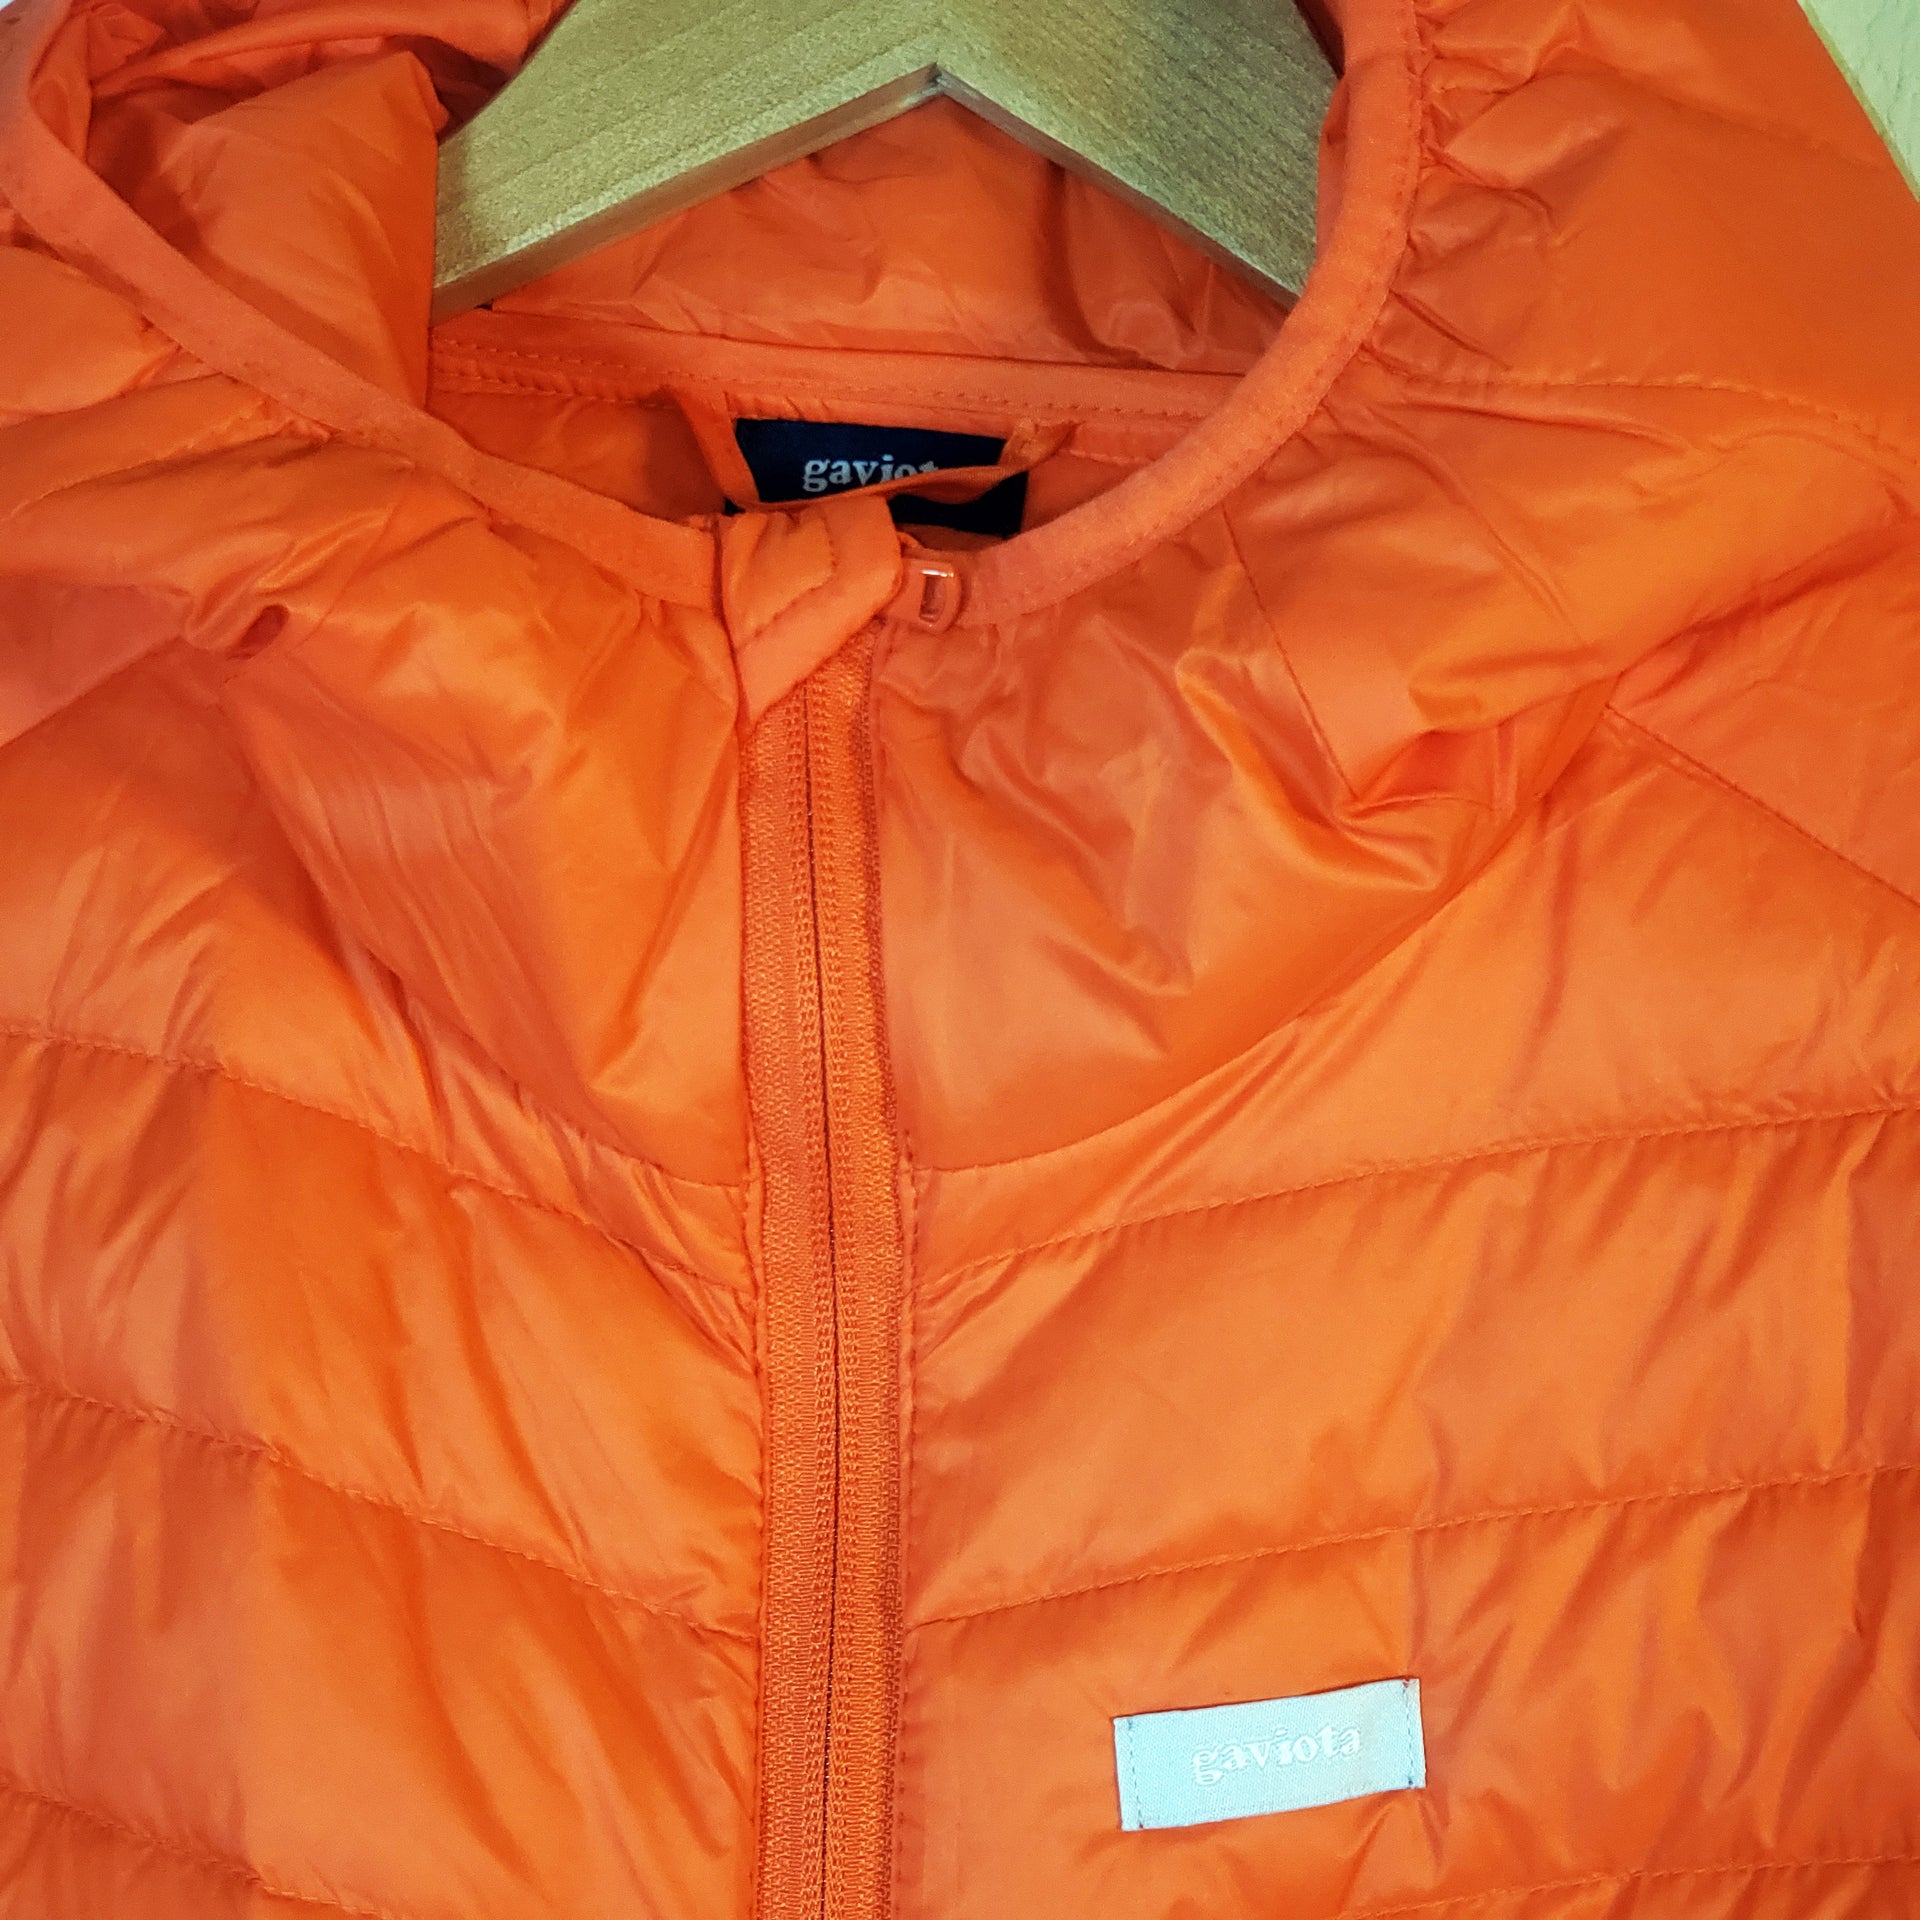 Day Puffy Hooded Jacket- orange